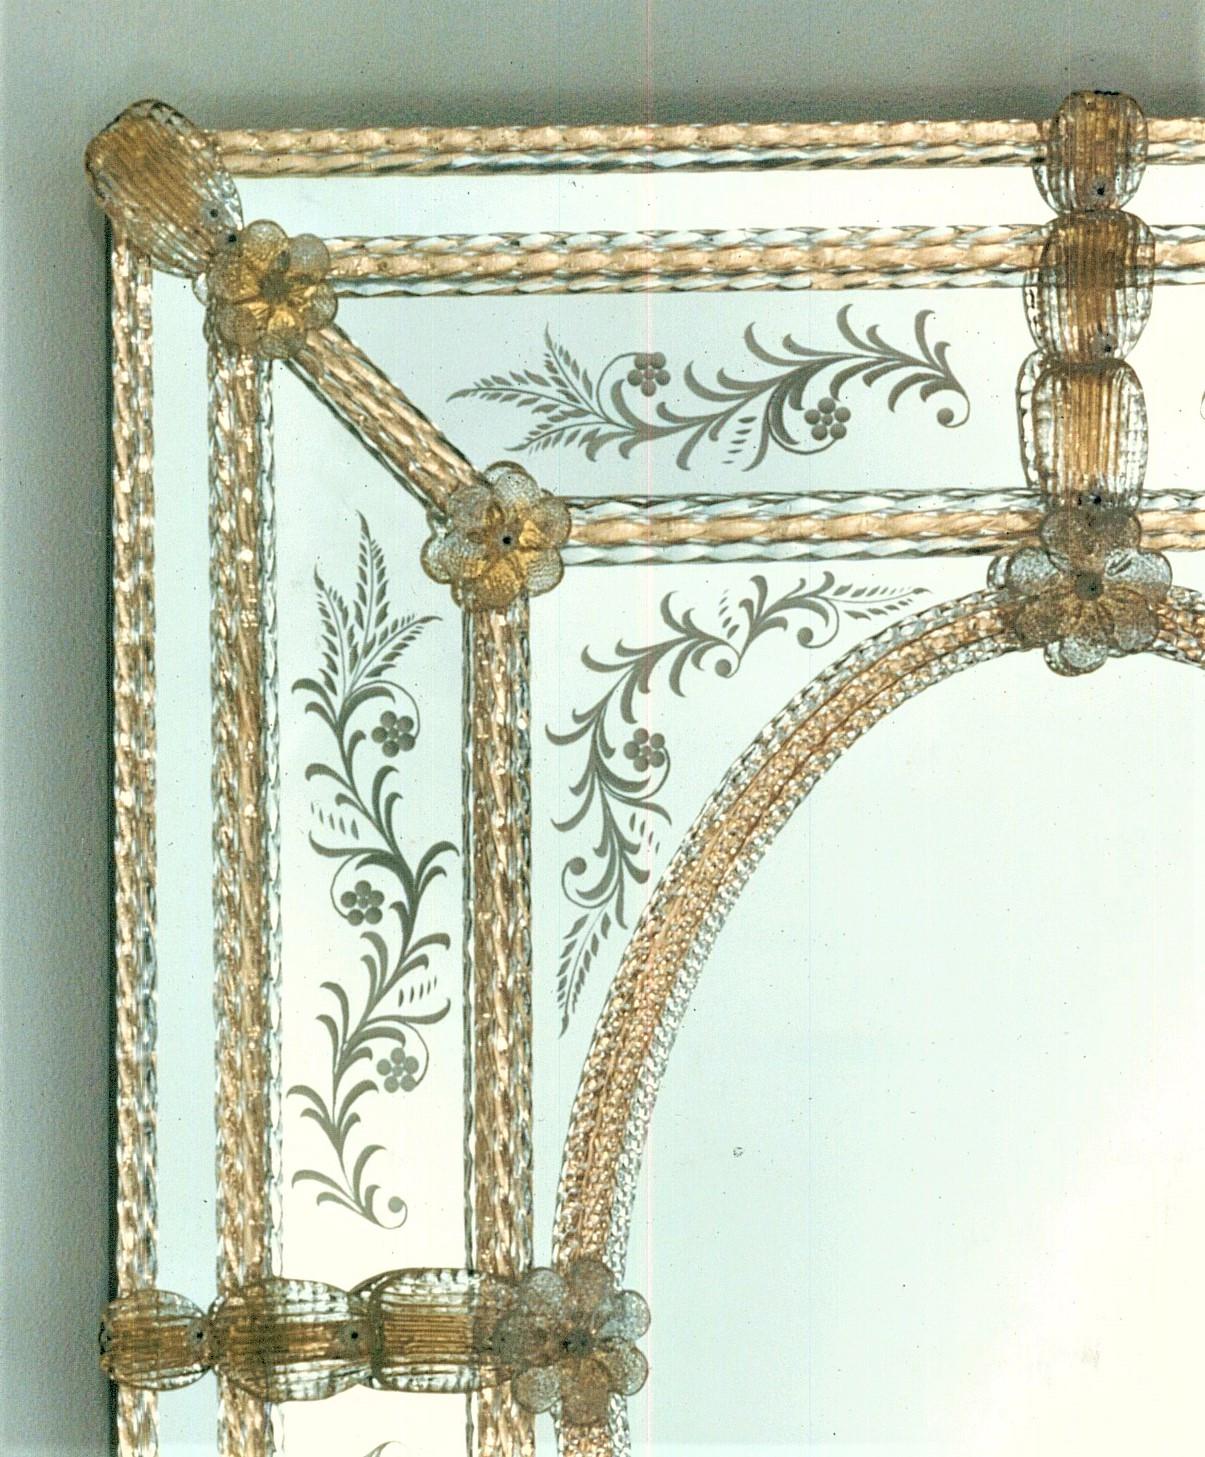 Rechteckiger Spiegel im klassischen venezianischen Stil nach einem Entwurf von Fratelli Tosi , aus Muranoglas, vollständig handgefertigt nach den Techniken unserer Vorfahren. Rechteckiger Spiegel, bestehend aus einem Oval in der Mitte mit einem